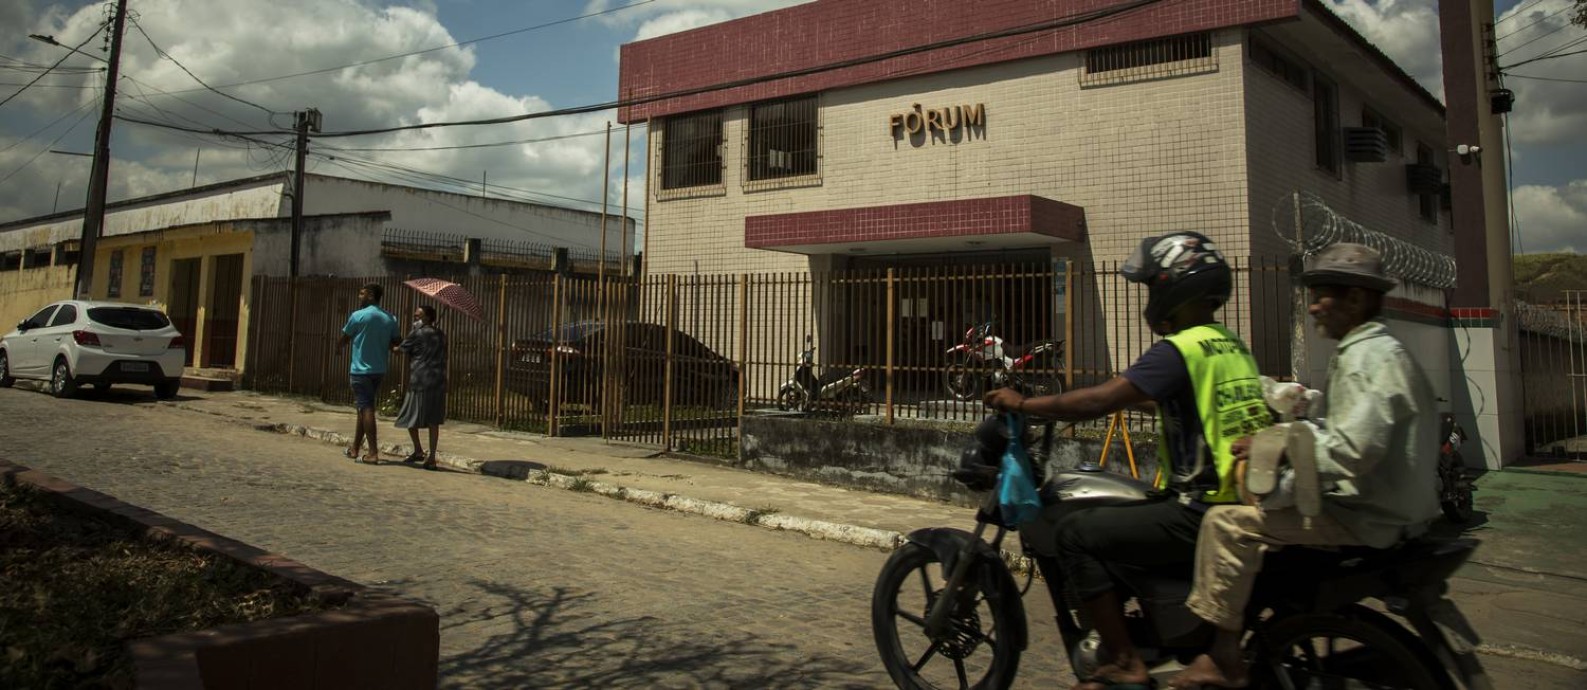 Gameleira, cidade de 30 mil habitantes na Zona da Mata pernambucana, é considerada uma das mais violentas do Nordeste Foto: Guito Moreto/Agência O Globo